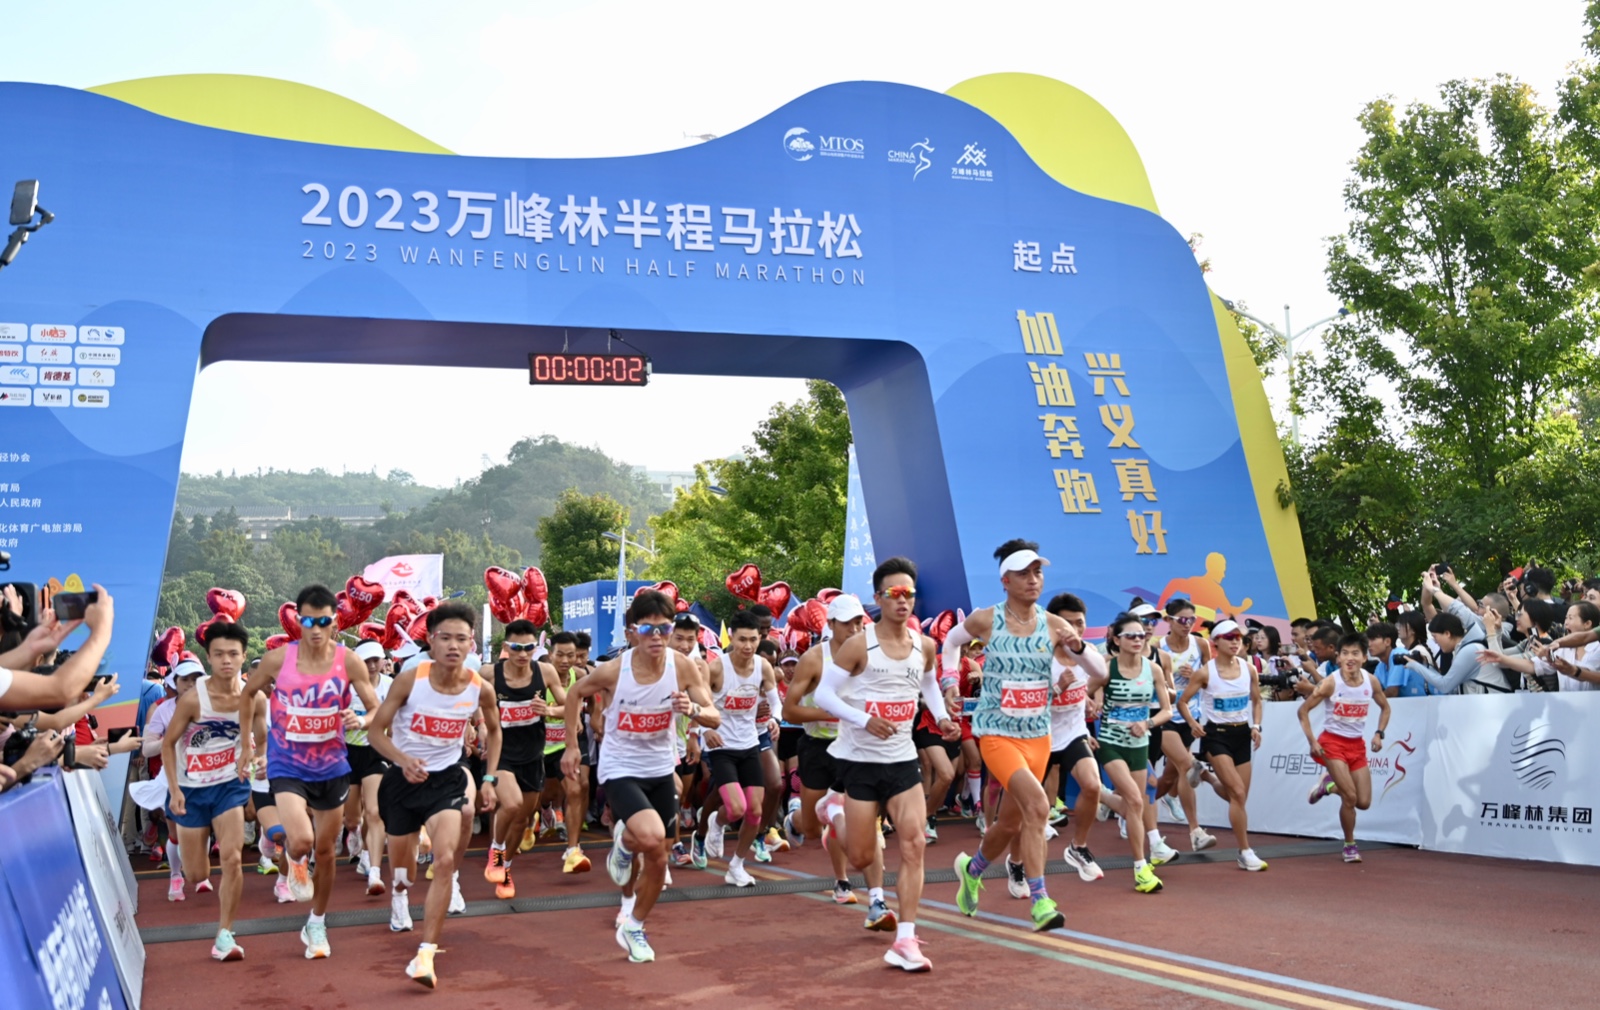 2023万峰林半程马拉松开跑。贵州日报天眼新闻记者 郑宇潇 摄.jpeg